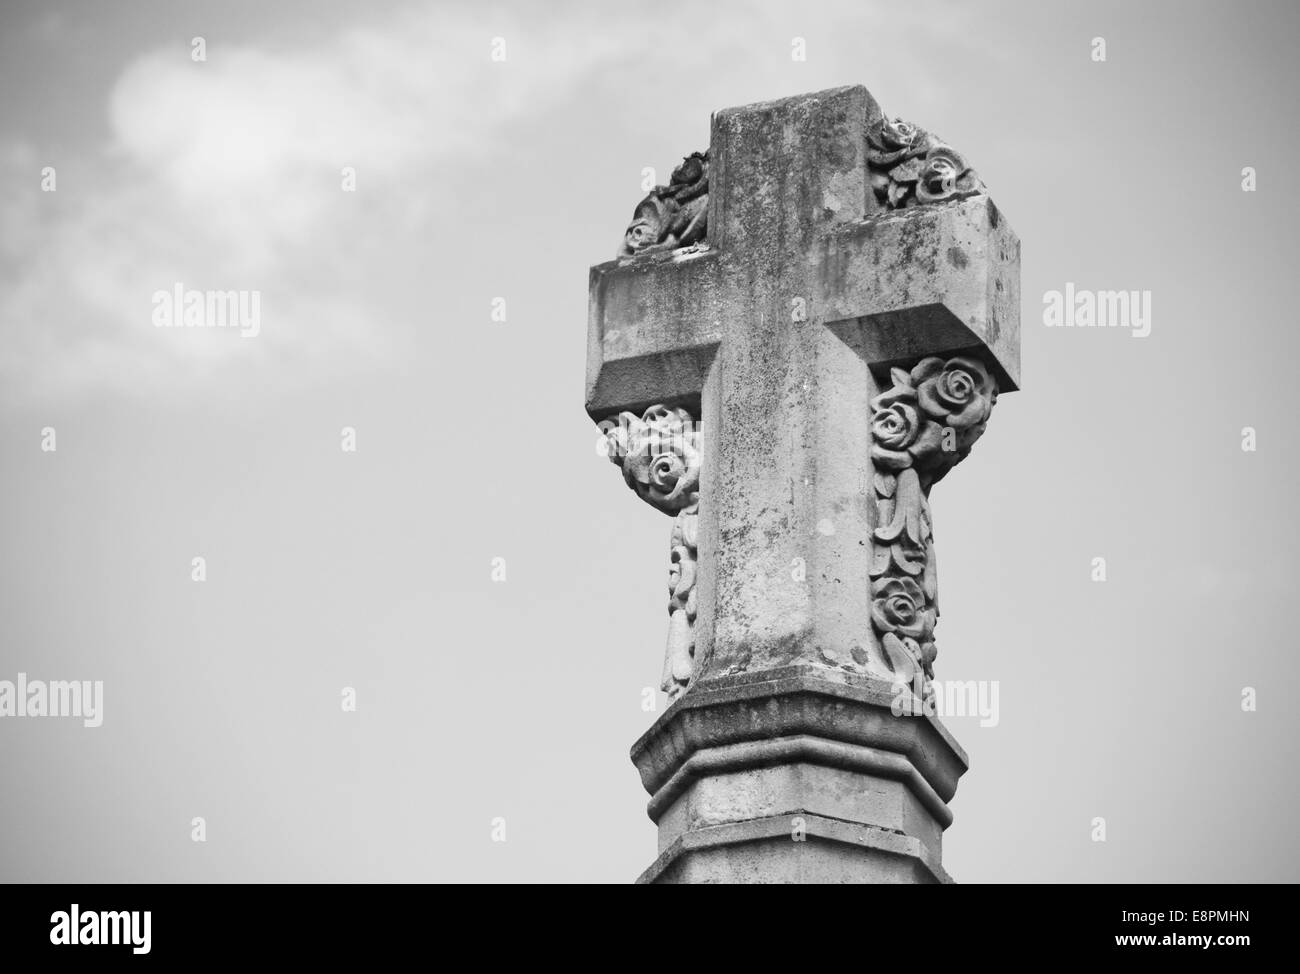 Détail de croix de pierre monument commémoratif de guerre à l'extérieur de la cathédrale de Winchester, Angleterre - traitement monochrome Banque D'Images